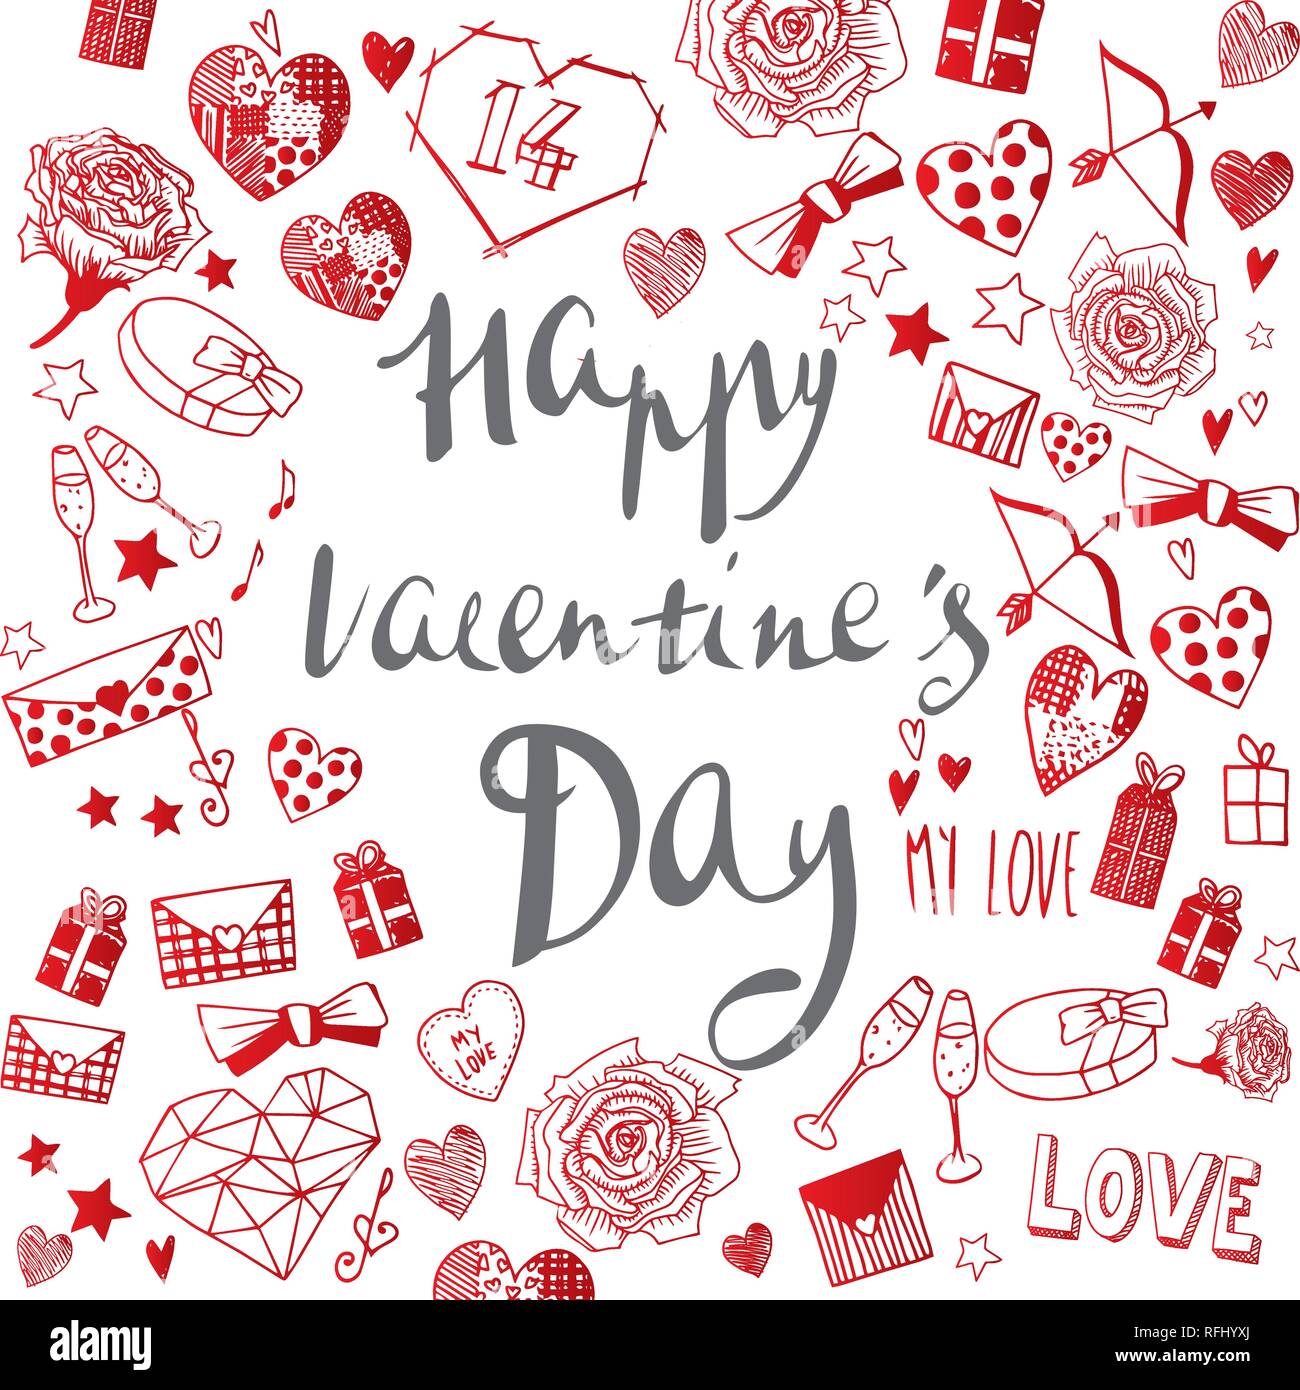 Il giorno di San Valentino scarabocchi illustrazioni vettoriali completa banner Illustrazione Vettoriale